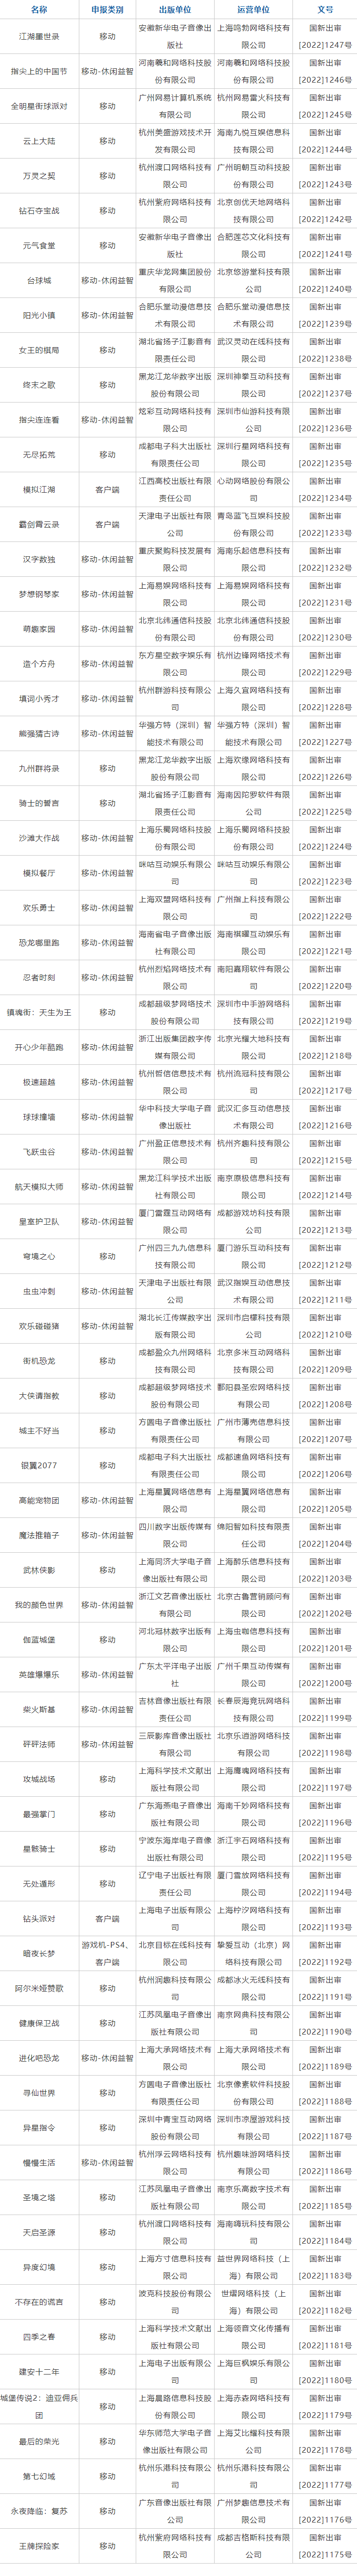 中國9月版號公佈73款遊戲 網易有份騰訊無